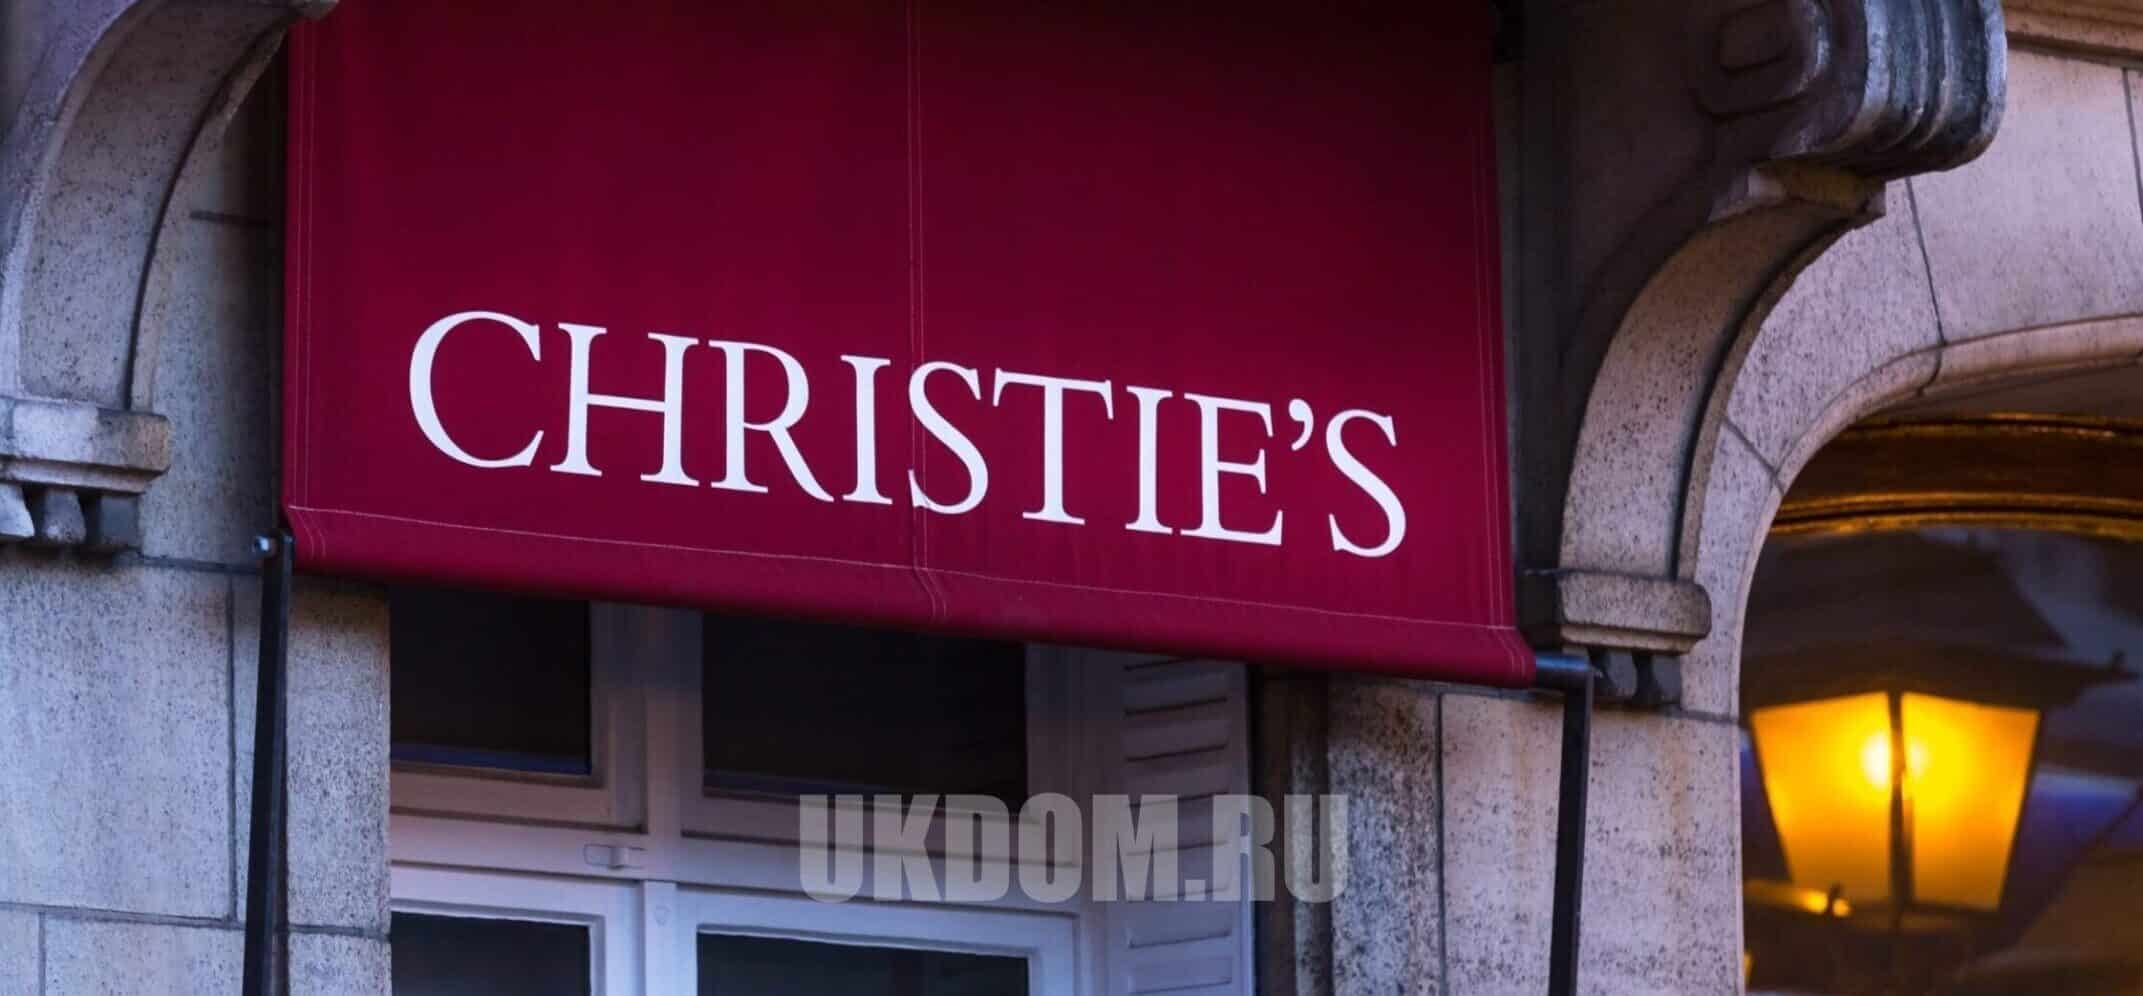 Неделя классики на Christie’s в Лондоне пройдет с 25 ноября по 15 декабря